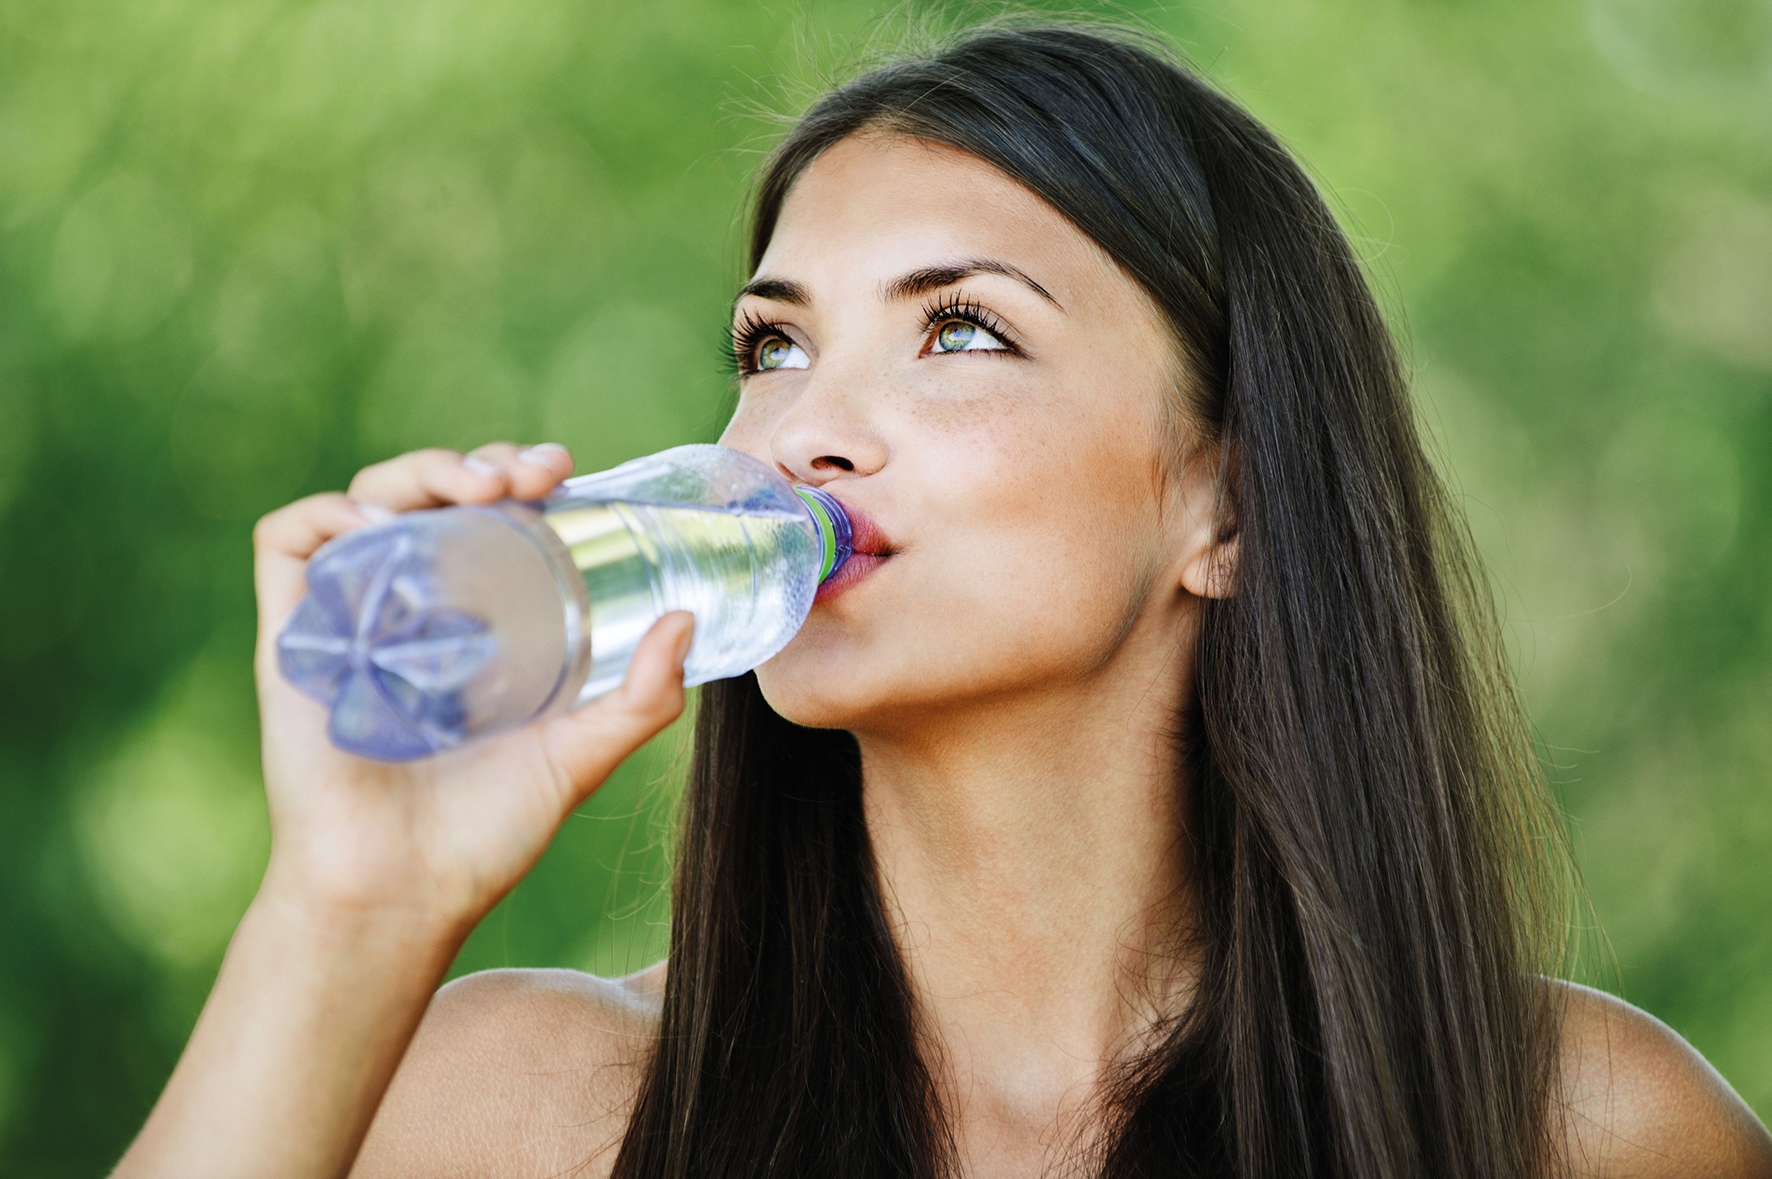 Пейте легкую воду. Девушка пьет воду. Девушка пьет воду из бутылки. Красивая девушка со стаканом воды. Девушка с бутылкой воды.